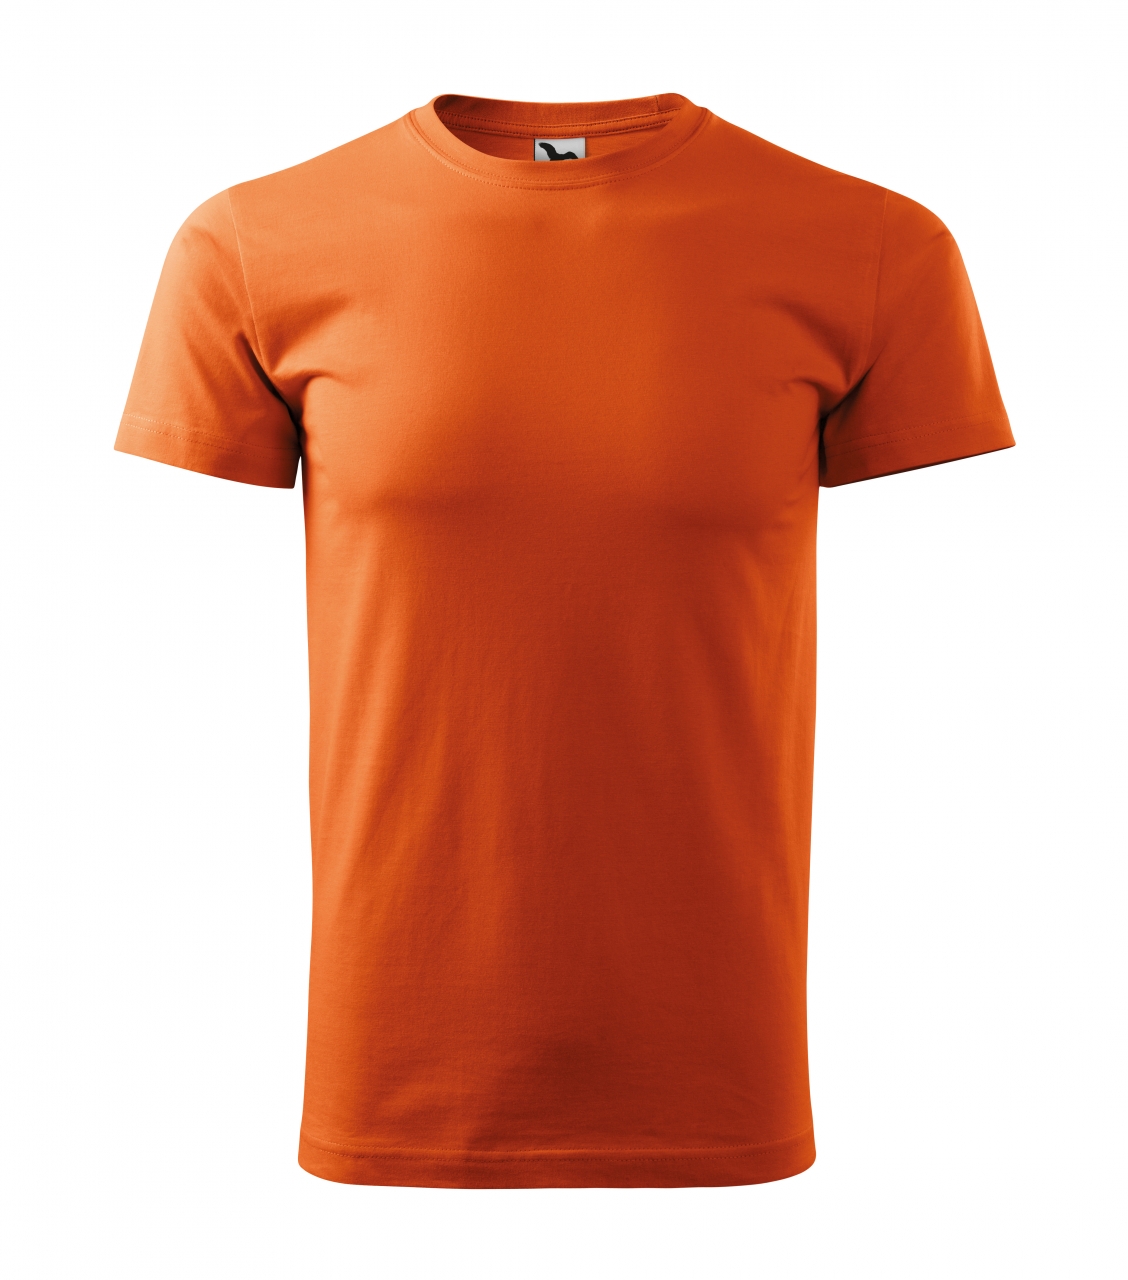 Triko pánské Malfini Basic - oranžové, XL